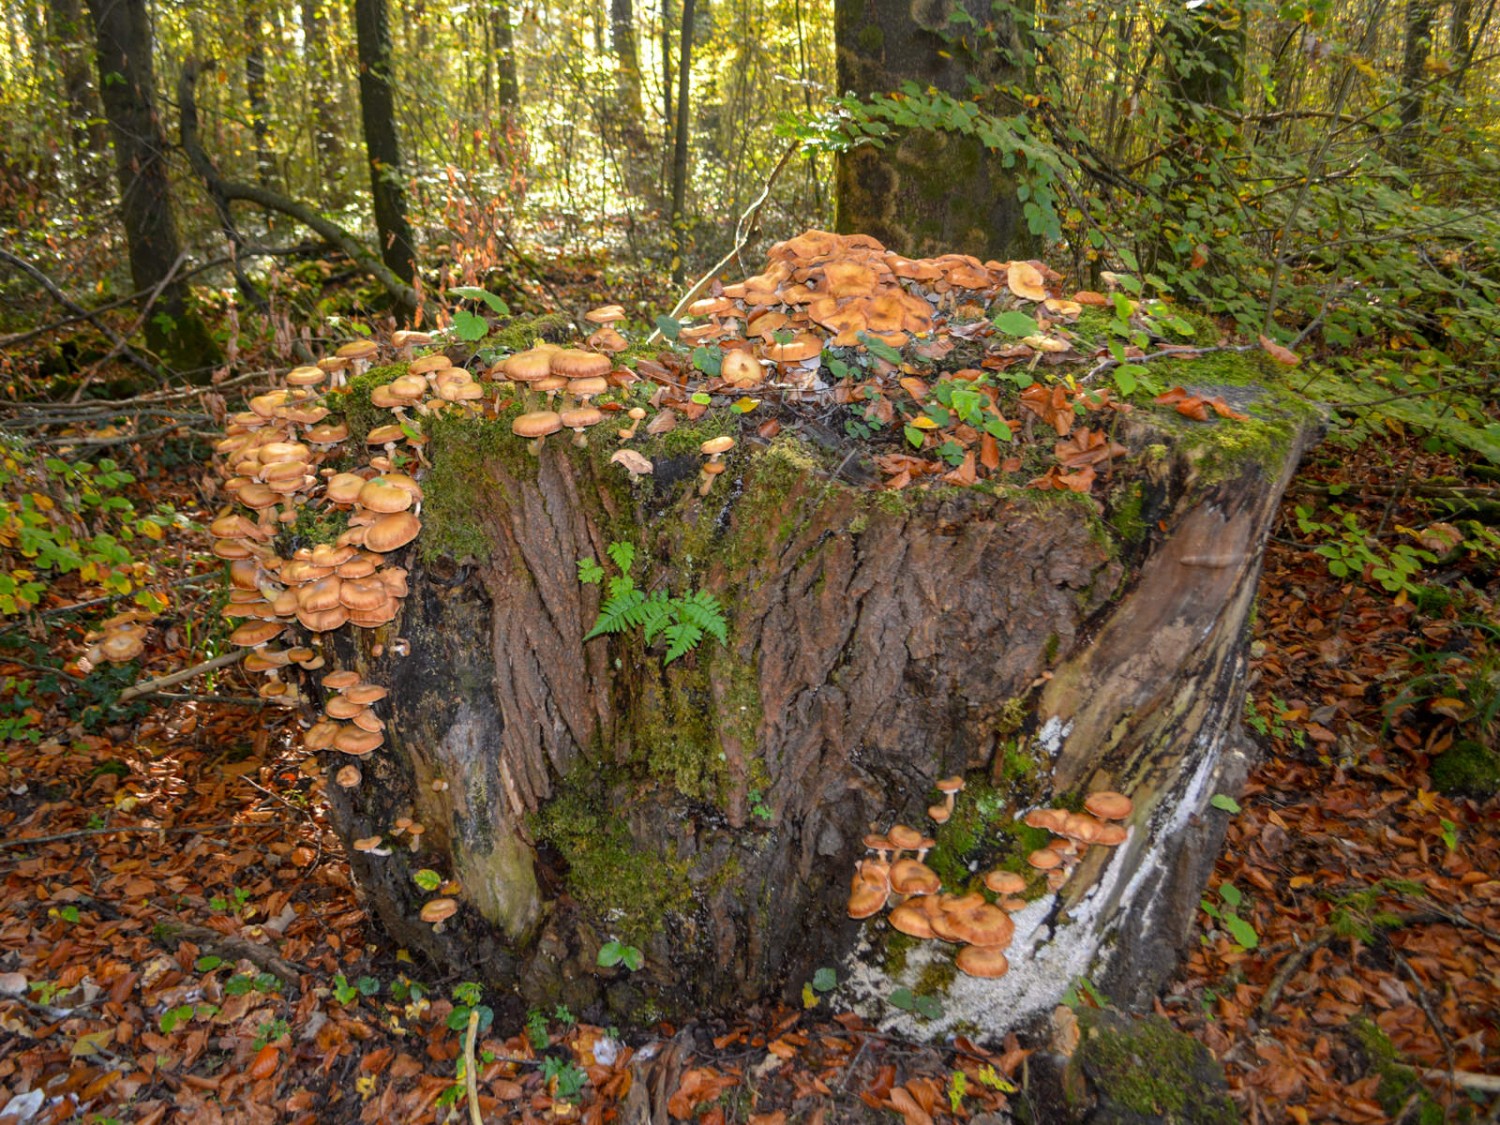 Herbstliche Zeugen im Wald. Bild: Werner Nef